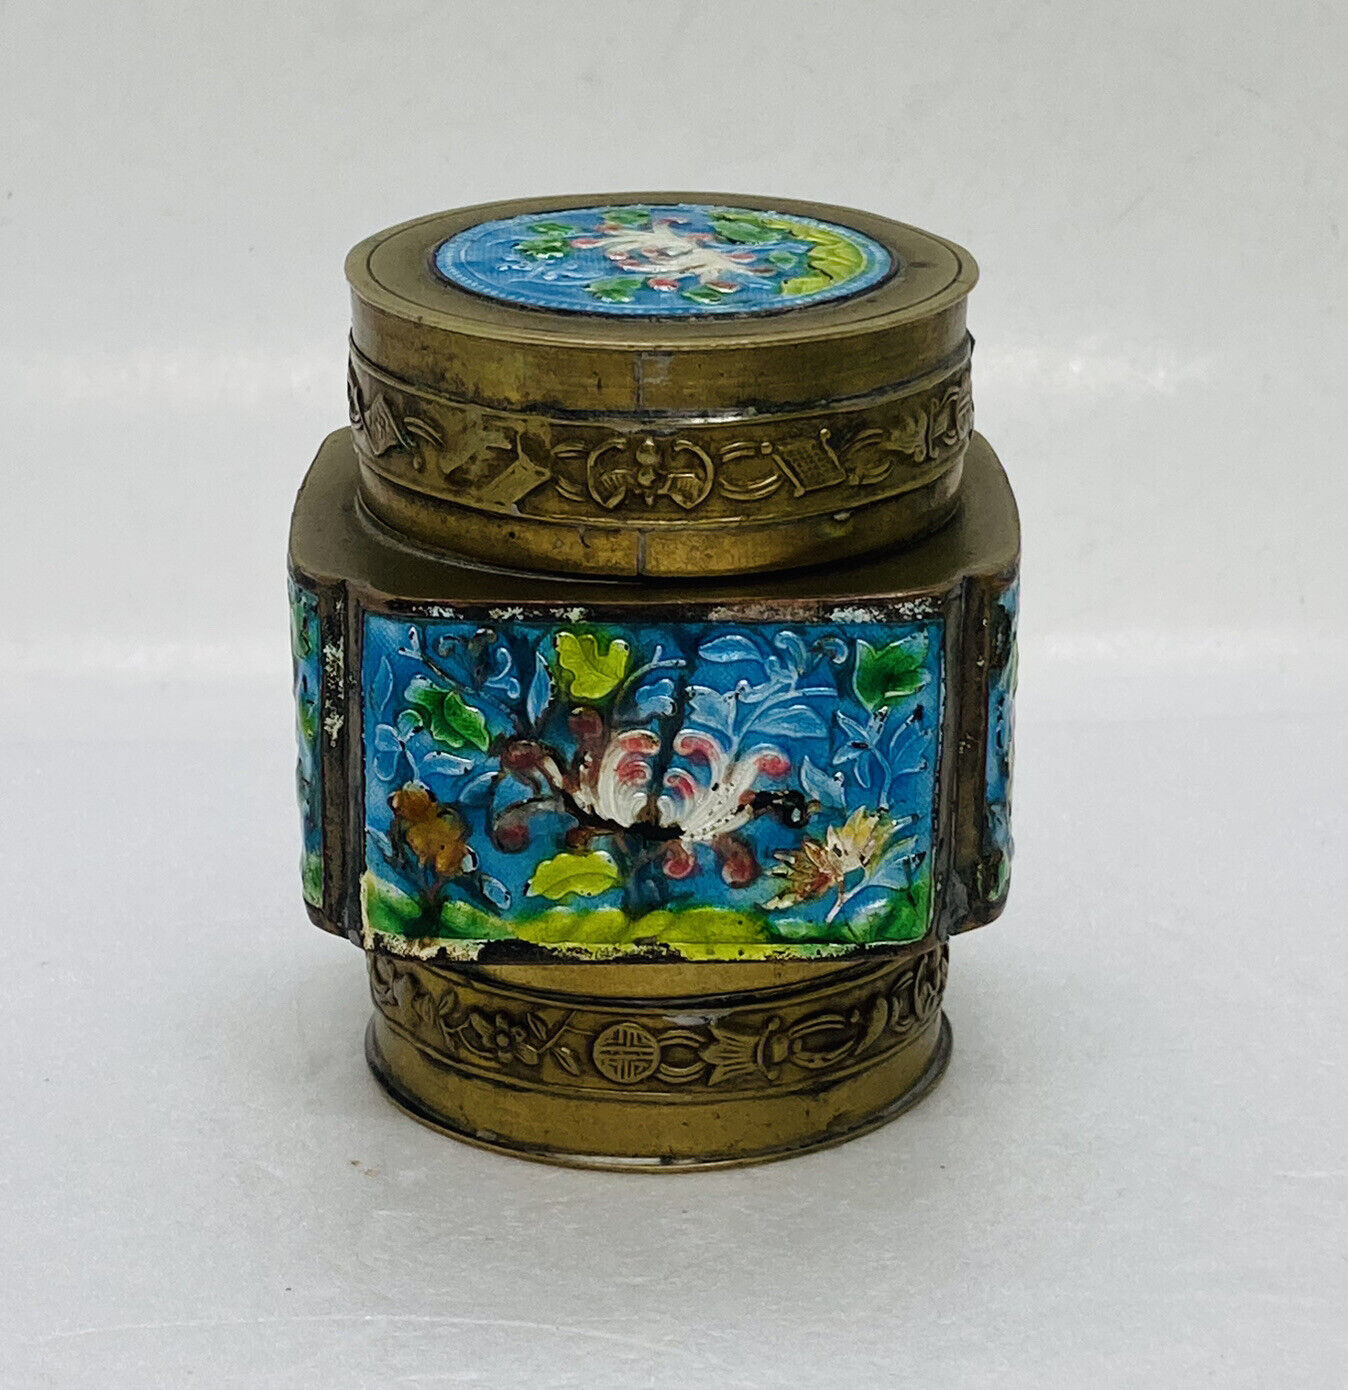 Vintage 1960s Chinese Brass Tra Jar Enamel Cloisonné Floral Art Unique Decor O